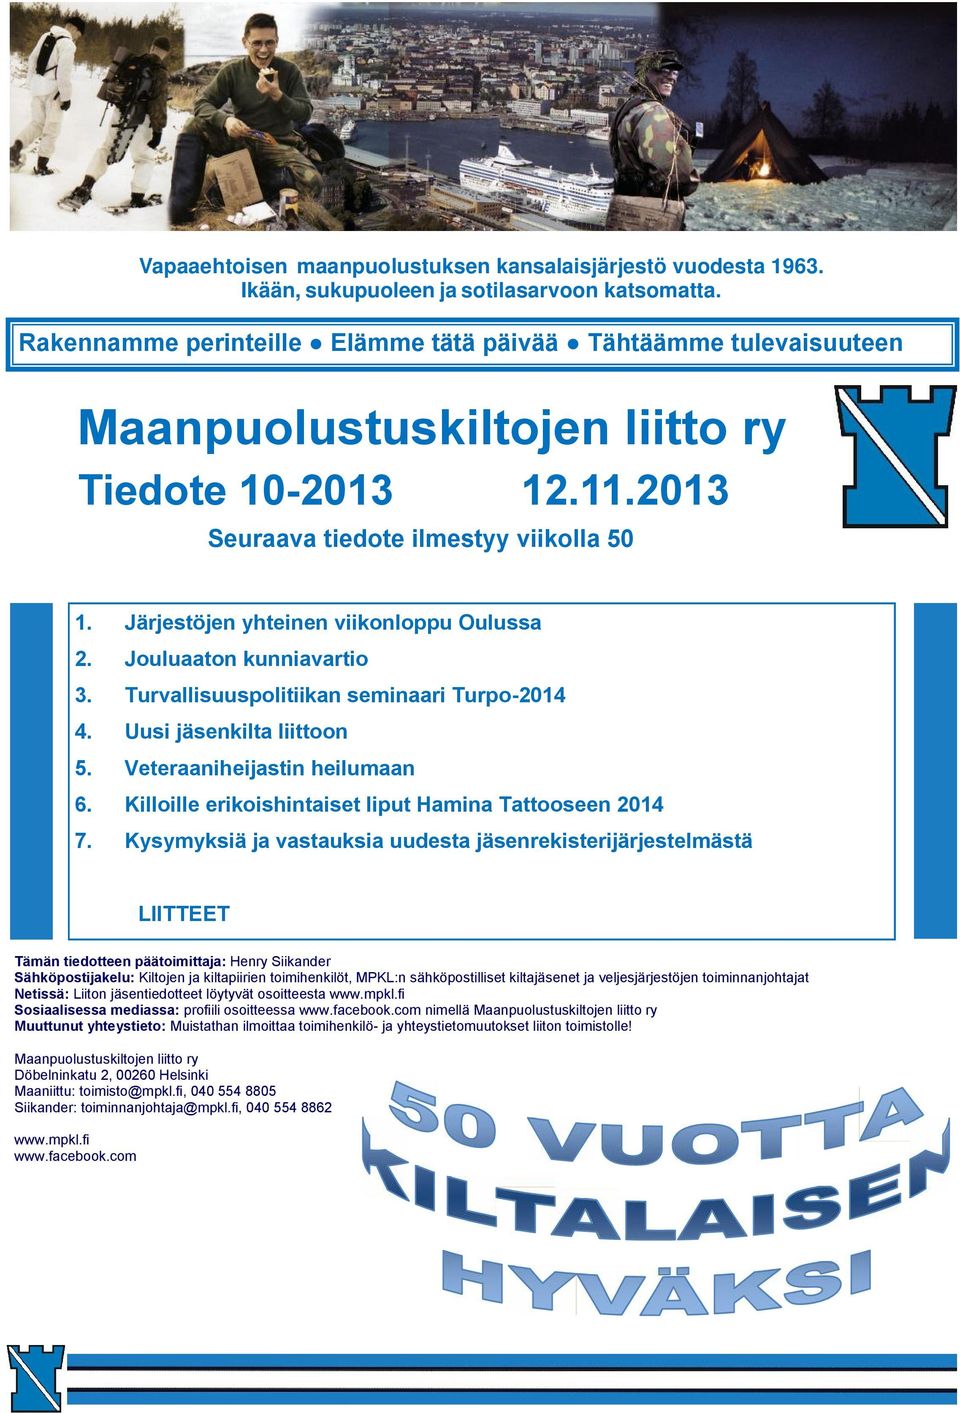 Järjestöjen yhteinen viikonloppu Oulussa 2. Jouluaaton kunniavartio 3. Turvallisuuspolitiikan seminaari Turpo-2014 4. Uusi jäsenkilta liittoon 5. Veteraaniheijastin heilumaan 6.